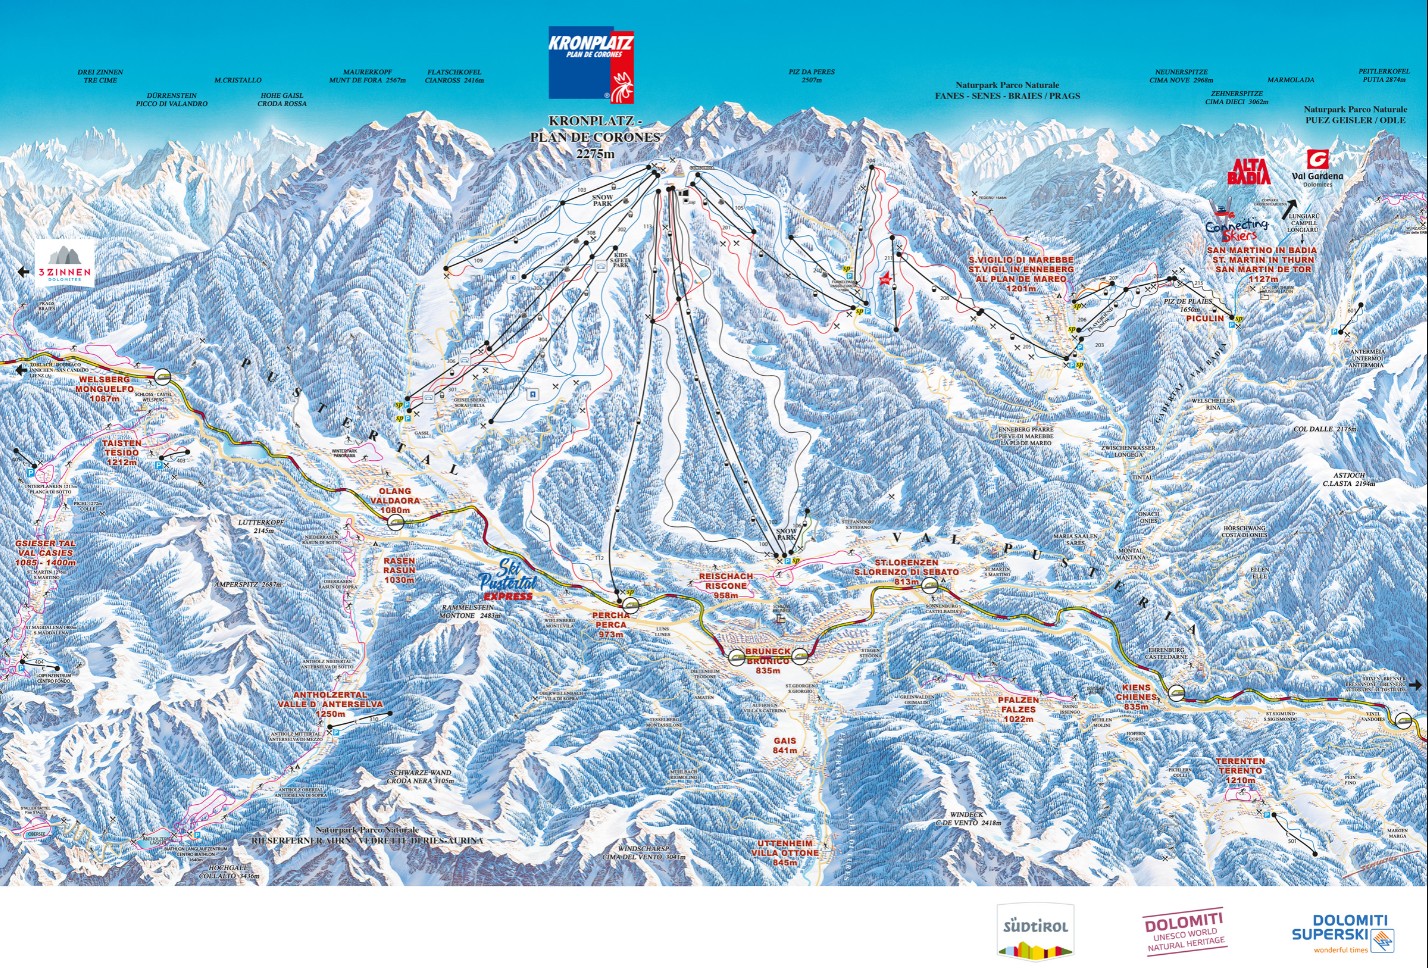 SKI-TEAM PLIVA poziva Vas na otvaranje ski sezone 2021/2022